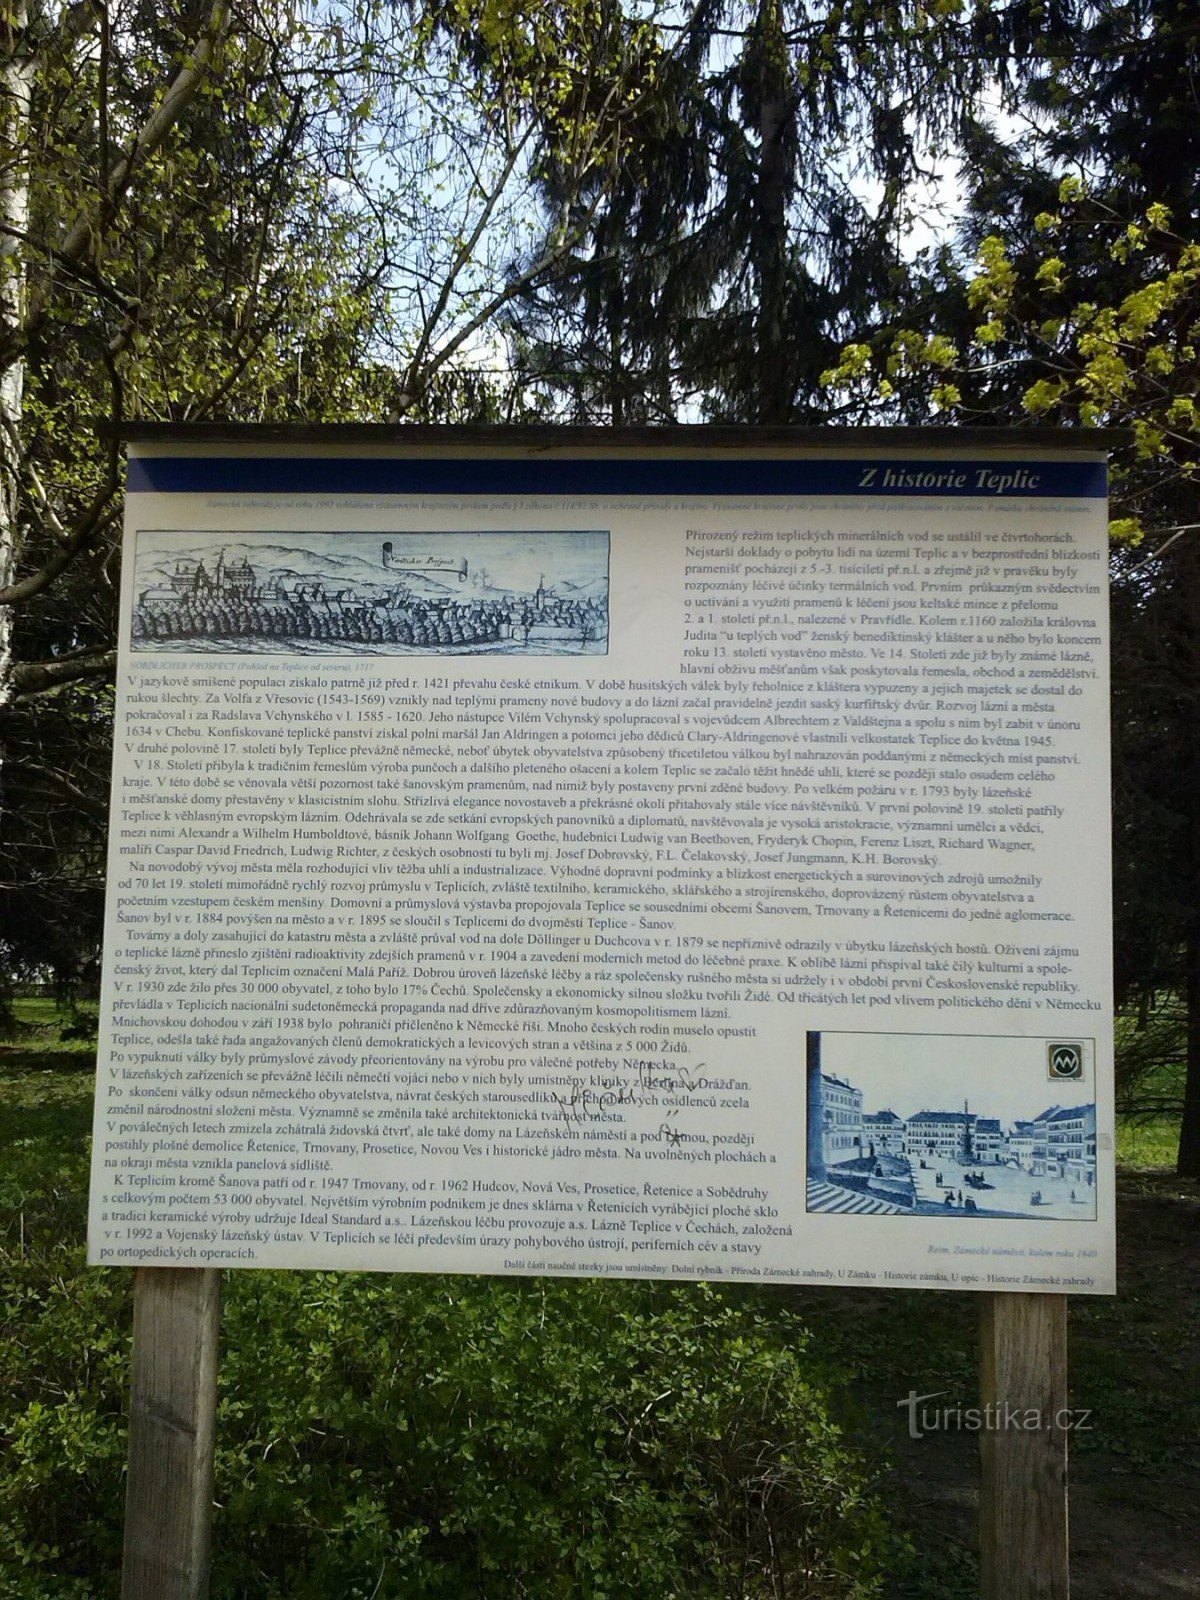 1. Lecciones sobre la historia de Teplice al borde del parque.